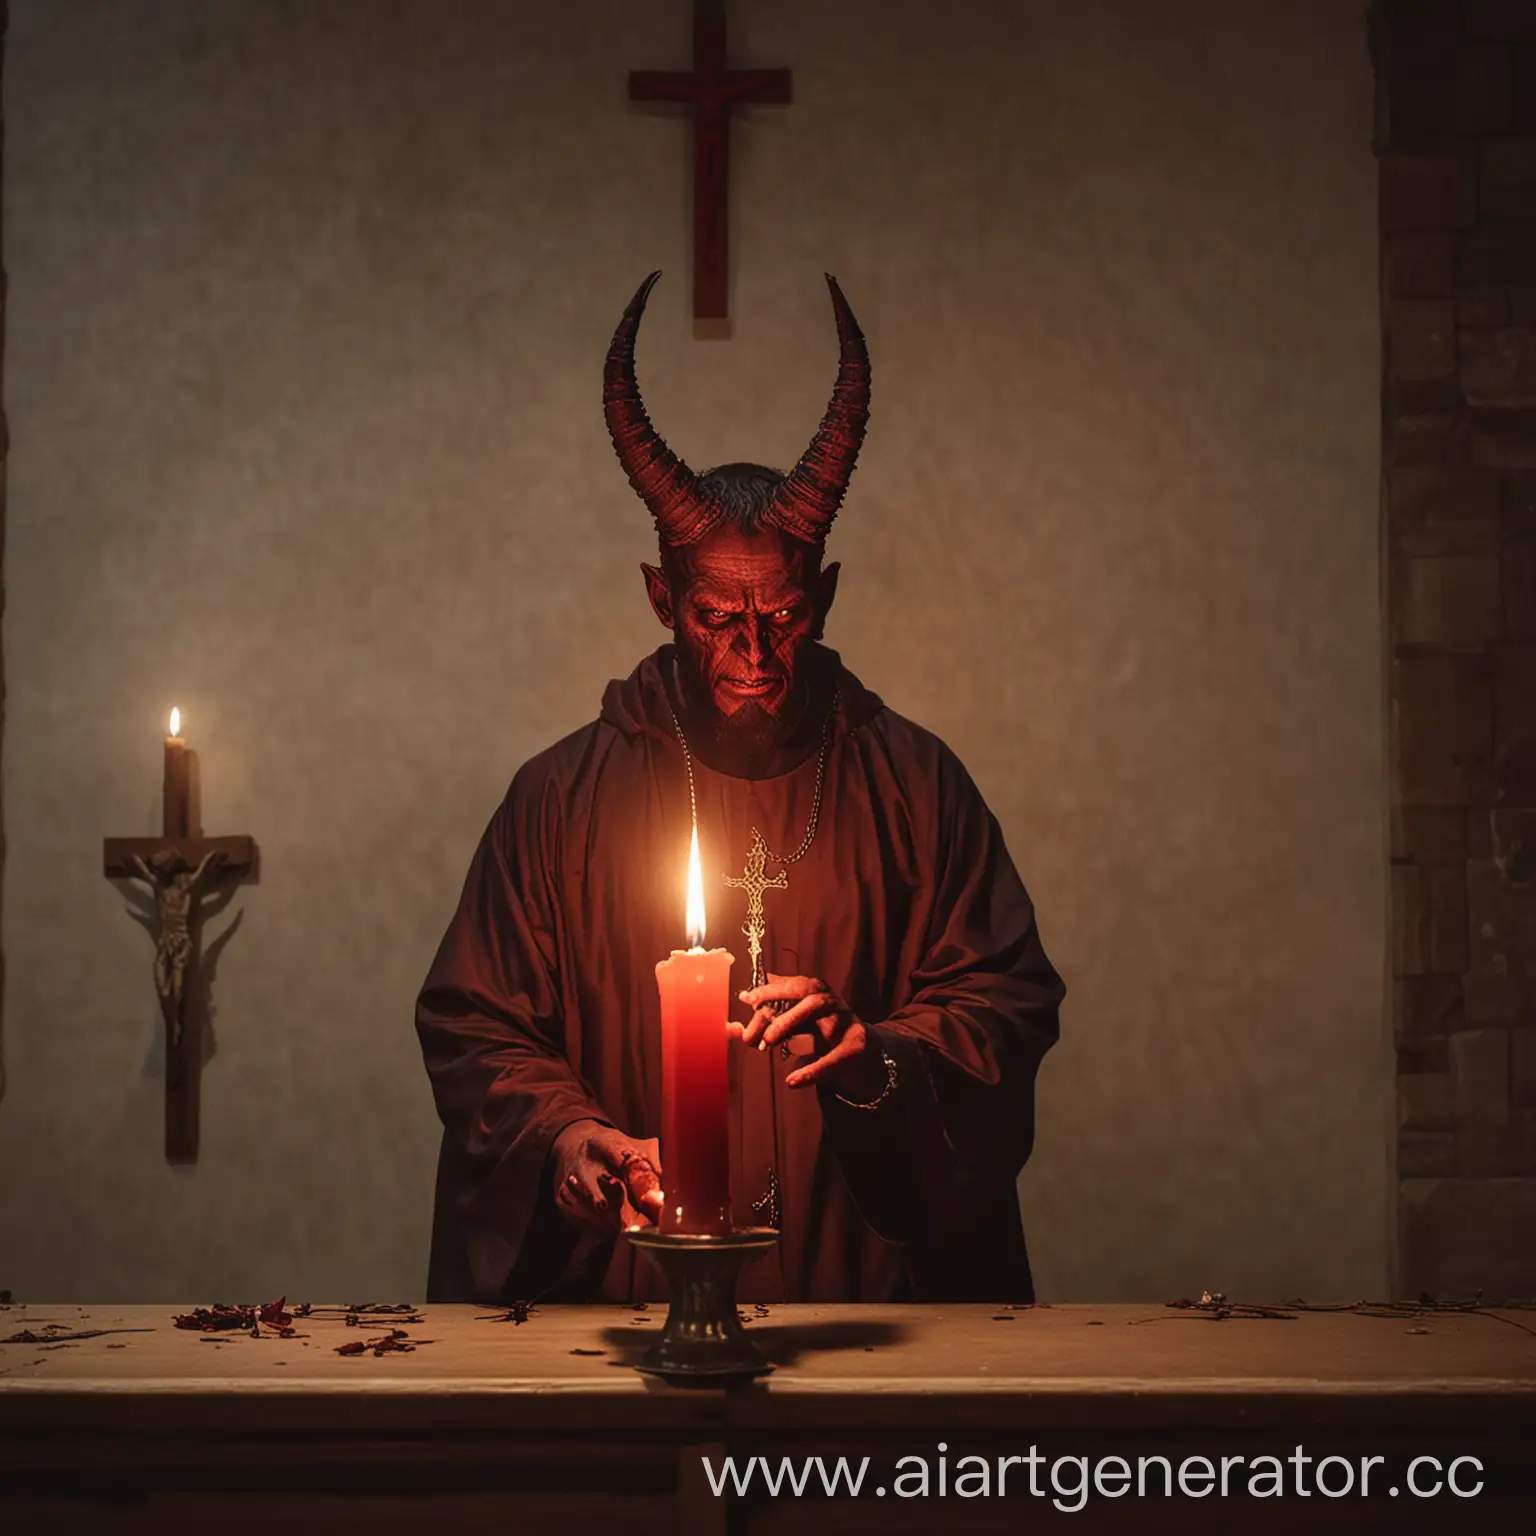 Satan-Lighting-Candle-in-Church